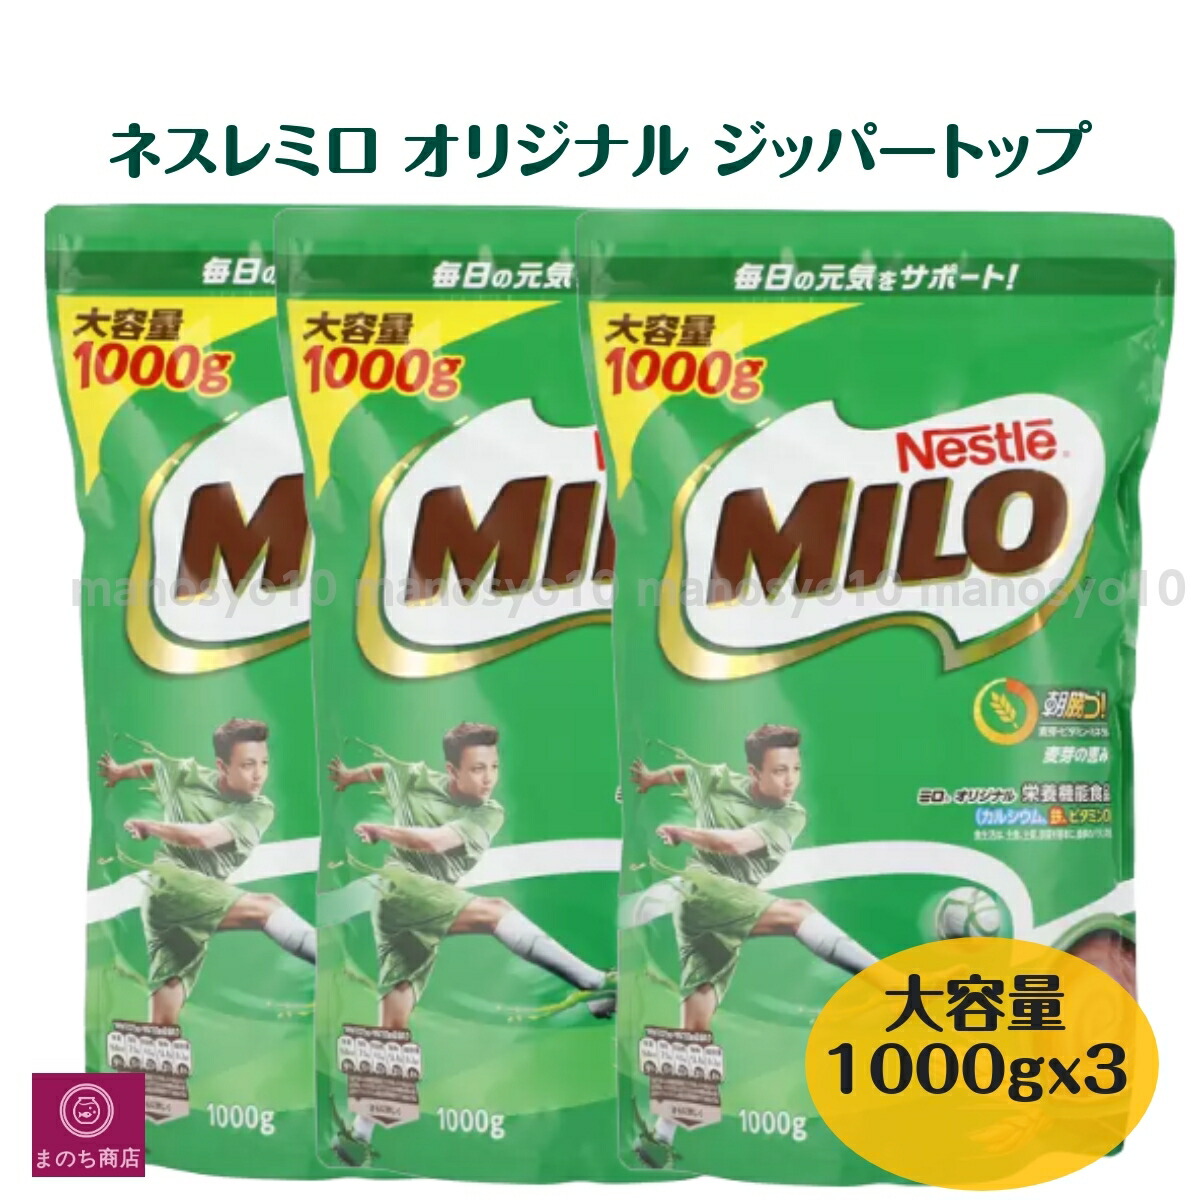 ネスレ日本 ネスレ ミロ オリジナル 1kg×3袋の商品画像